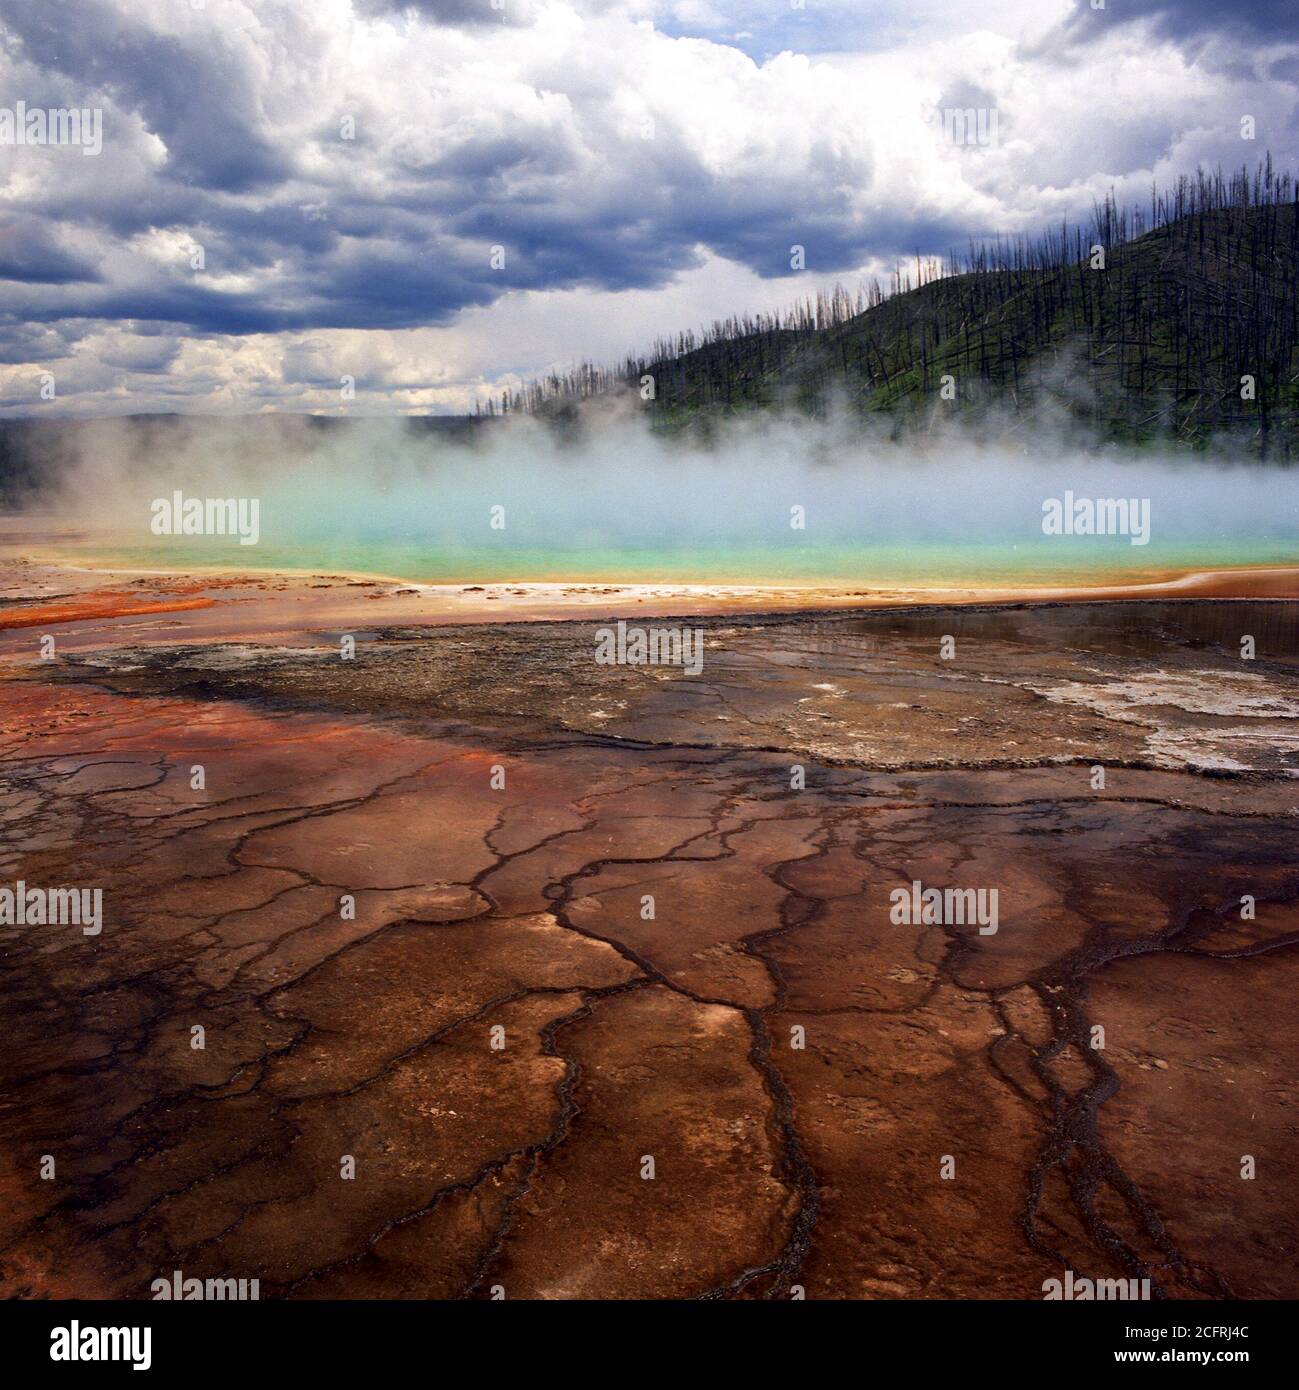 Enorme piscina prismatica nel Parco Nazionale di Yellowstone. Questo fenomeno dimostra l'incredibile varietà di colori di questa caratteristica naturale scenografica. Foto Stock